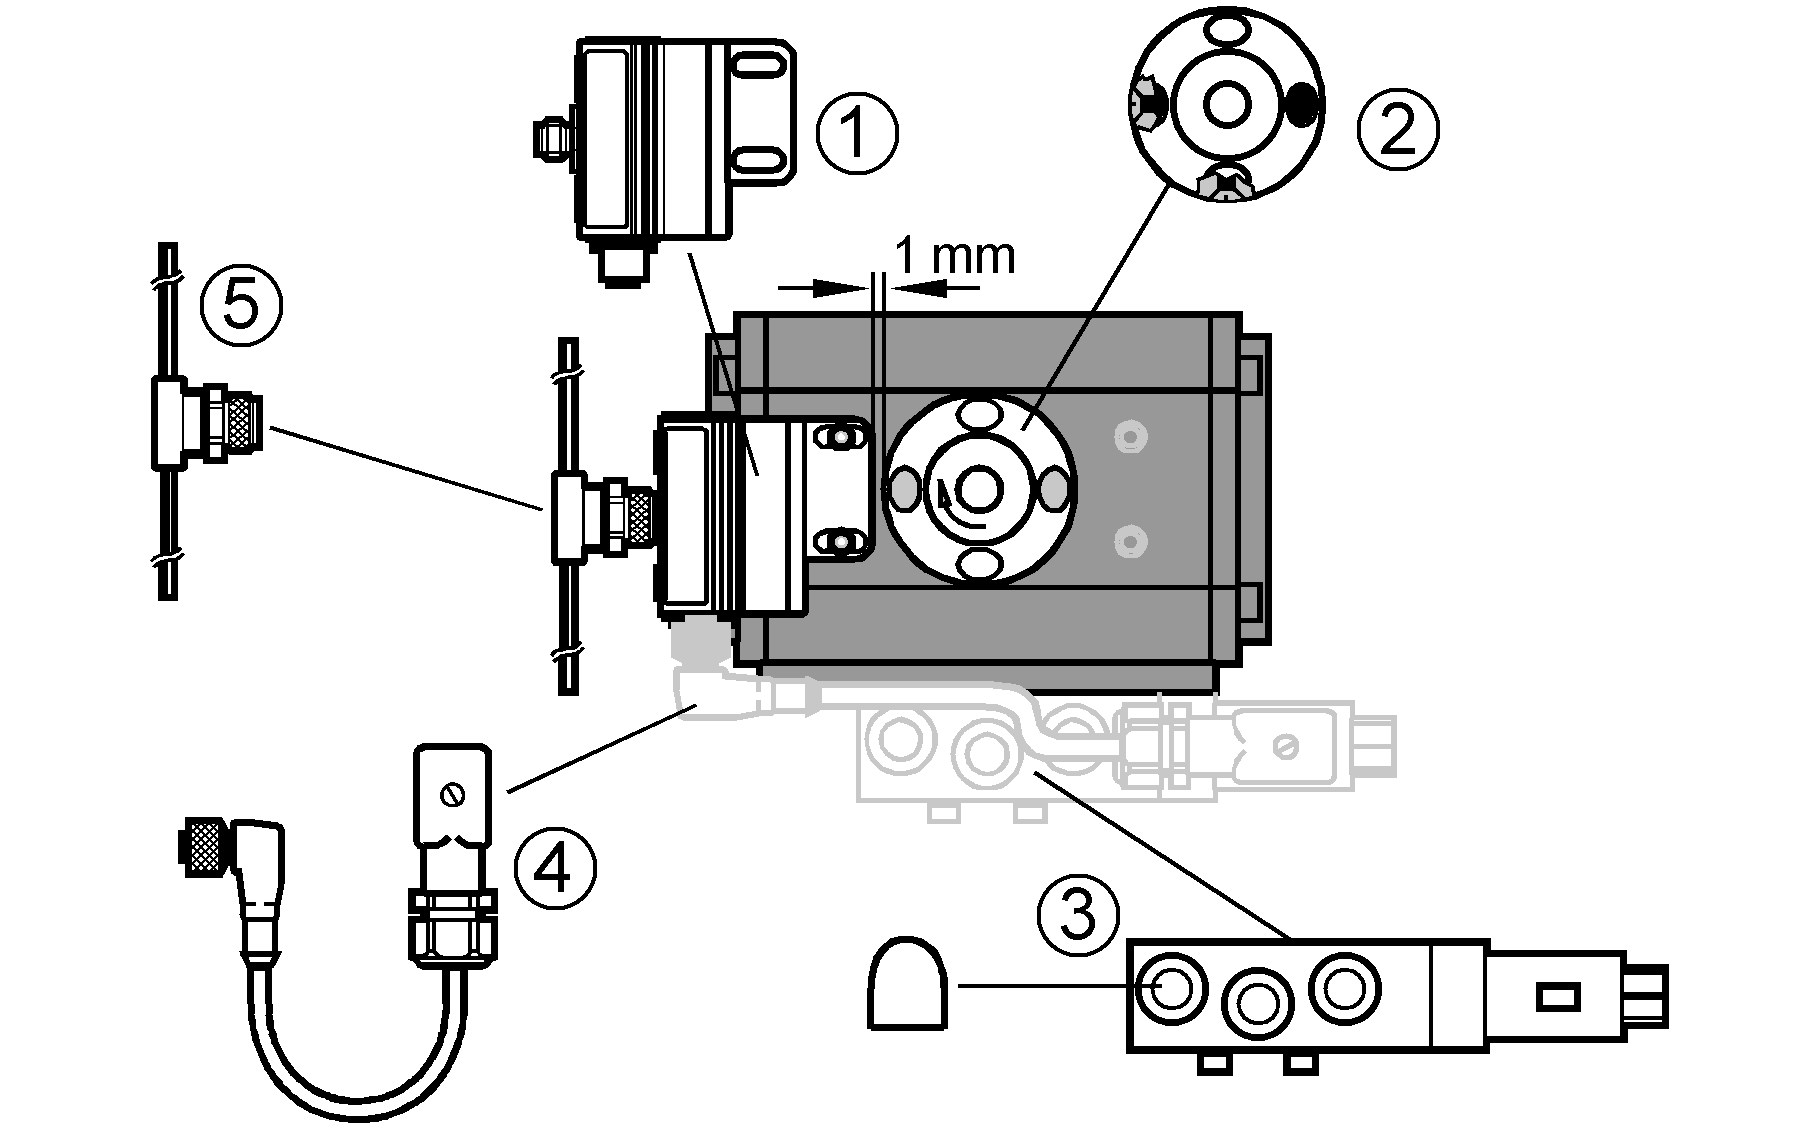 1: T5 Соединение (Bestell-Nr. AC2316)<br/>2: Насадка (номер для заказа E17328)<br/>3: Электромагнитный клапан Norgren Herion 2623079303602400 и 2 звукоизолятора 0014600<br/>4: Кабель T5 и электромагнитный клапан (Bestell-Nr. E10818)<br/>5: Ответвитель для плоского кабеля T5 / AS-i (номер для заказа E70271)